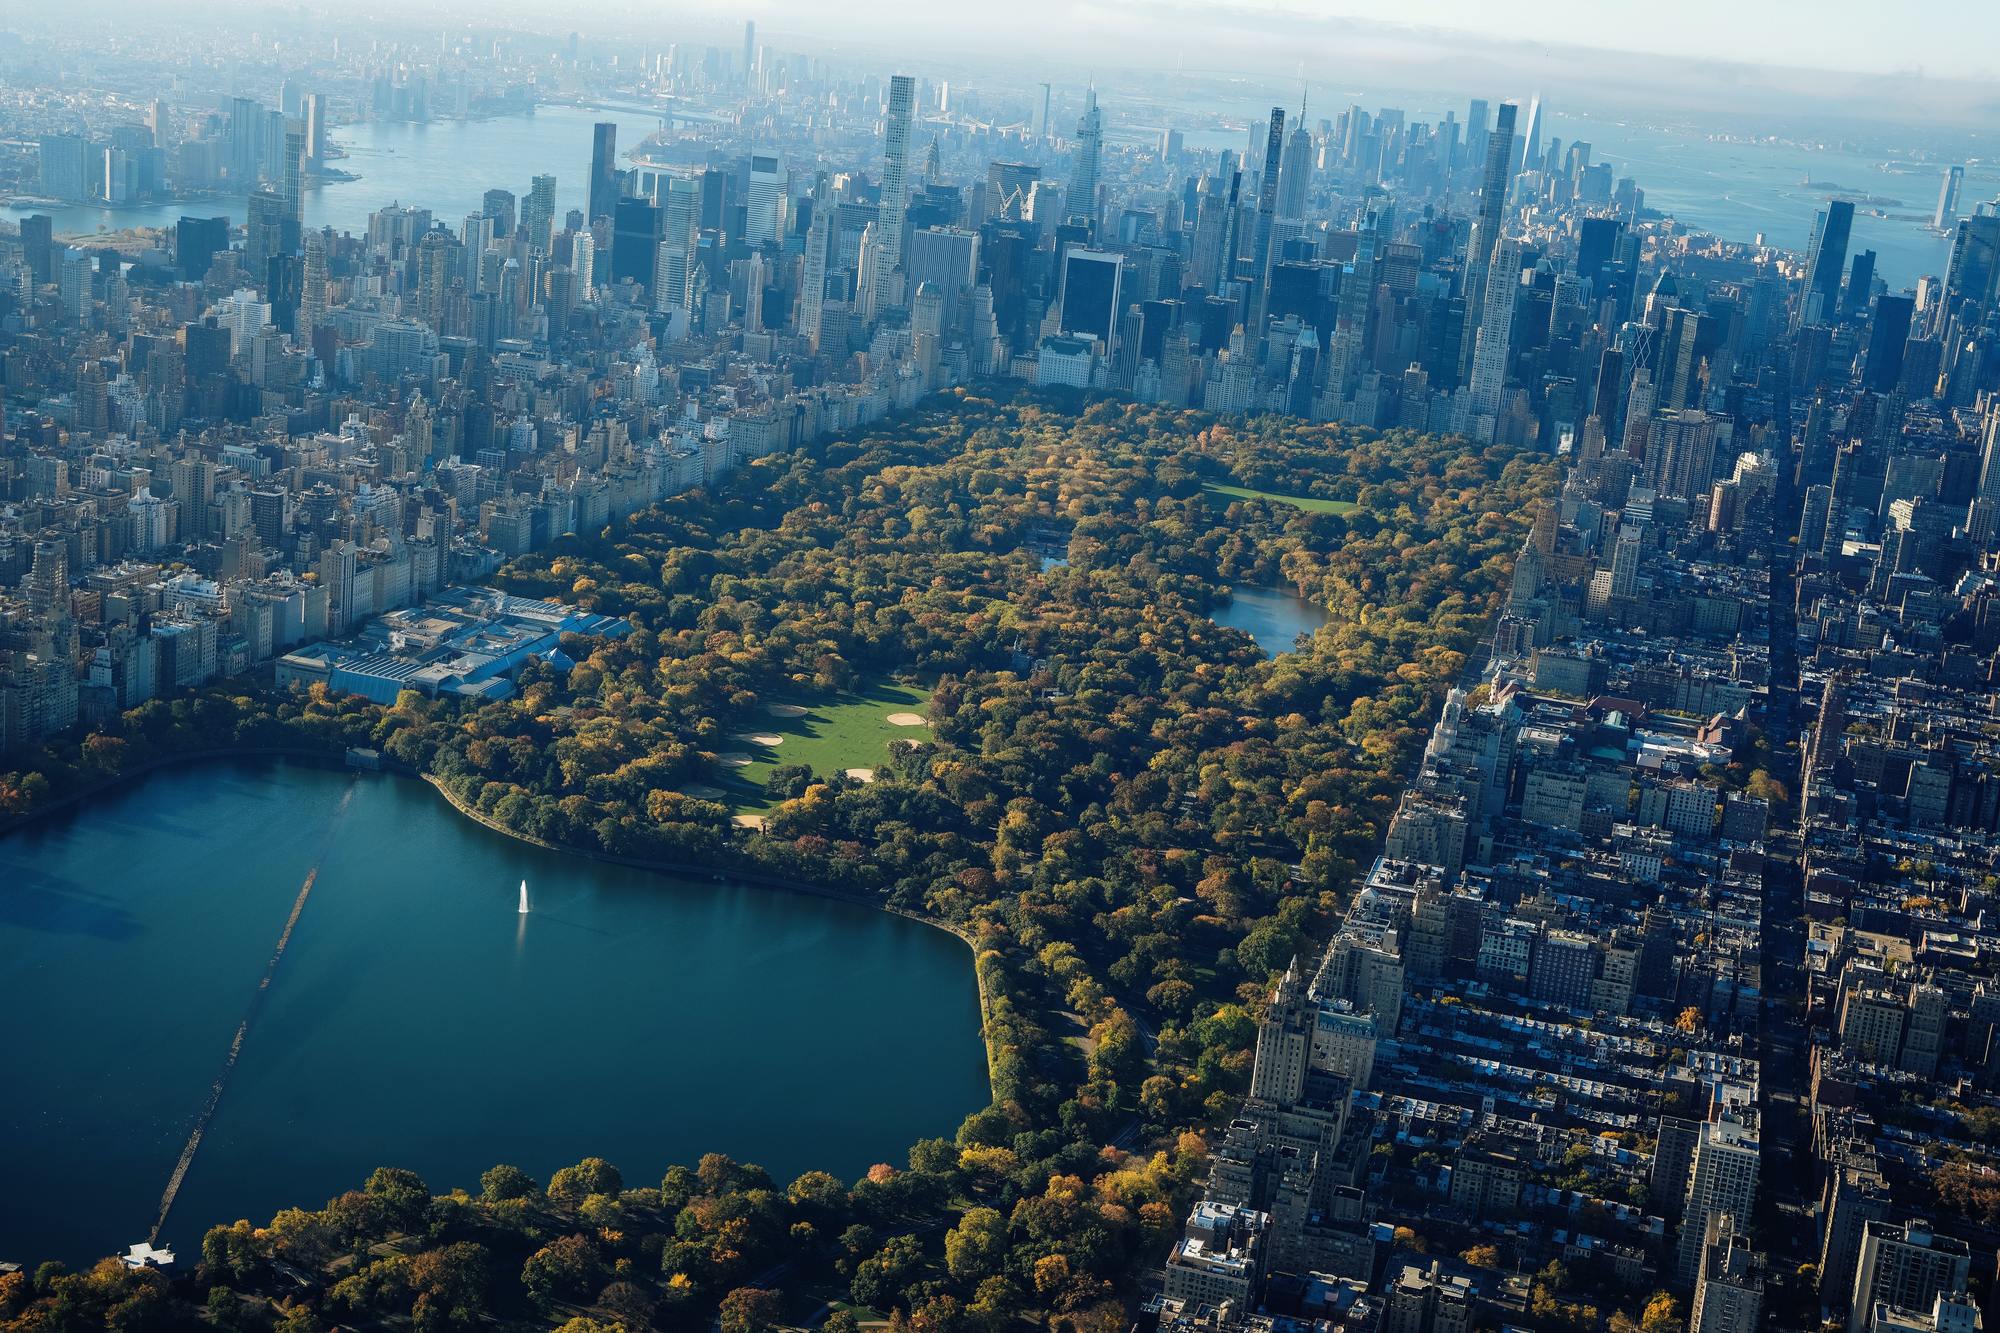 Explore Central Park photo